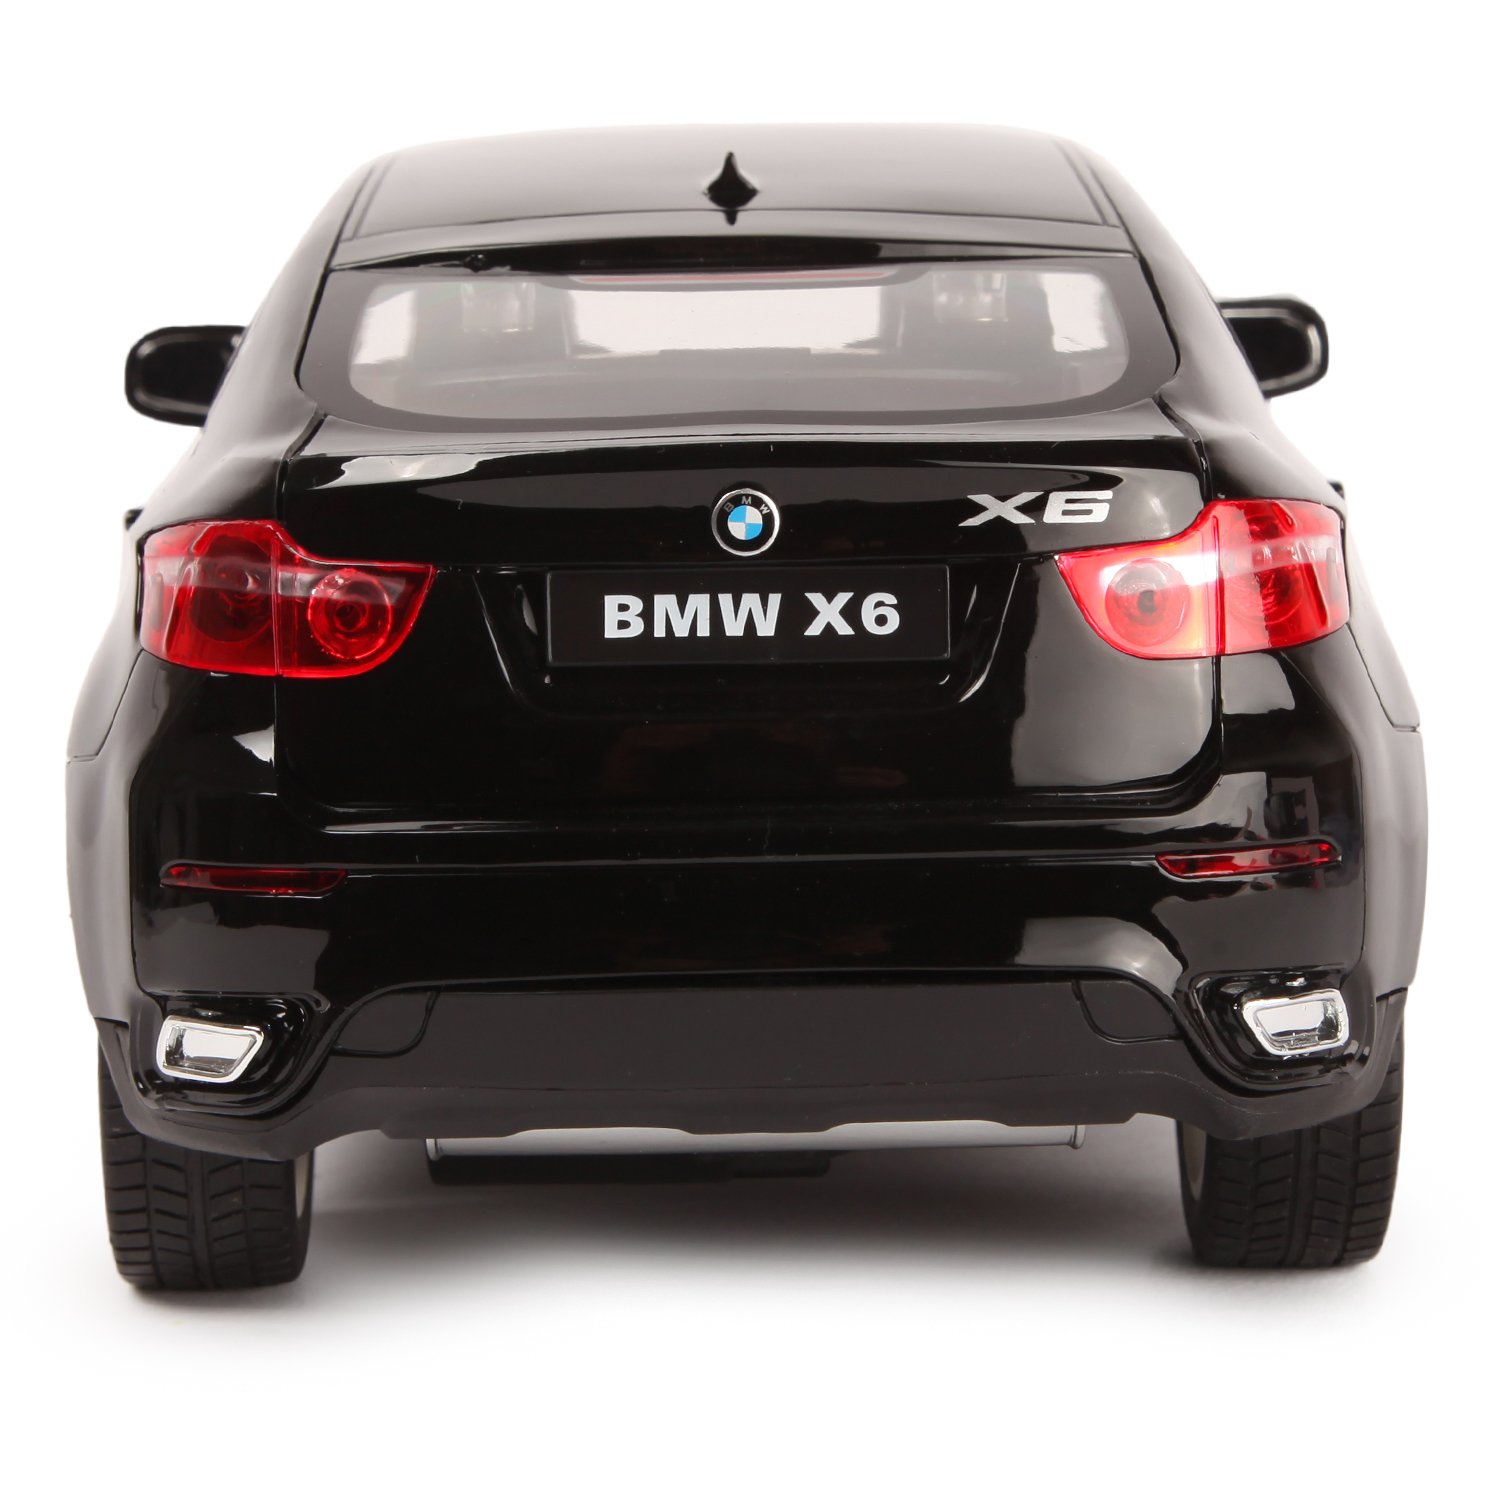 Машина Rastar РУ 1:14 BMW X6 Черная 31400